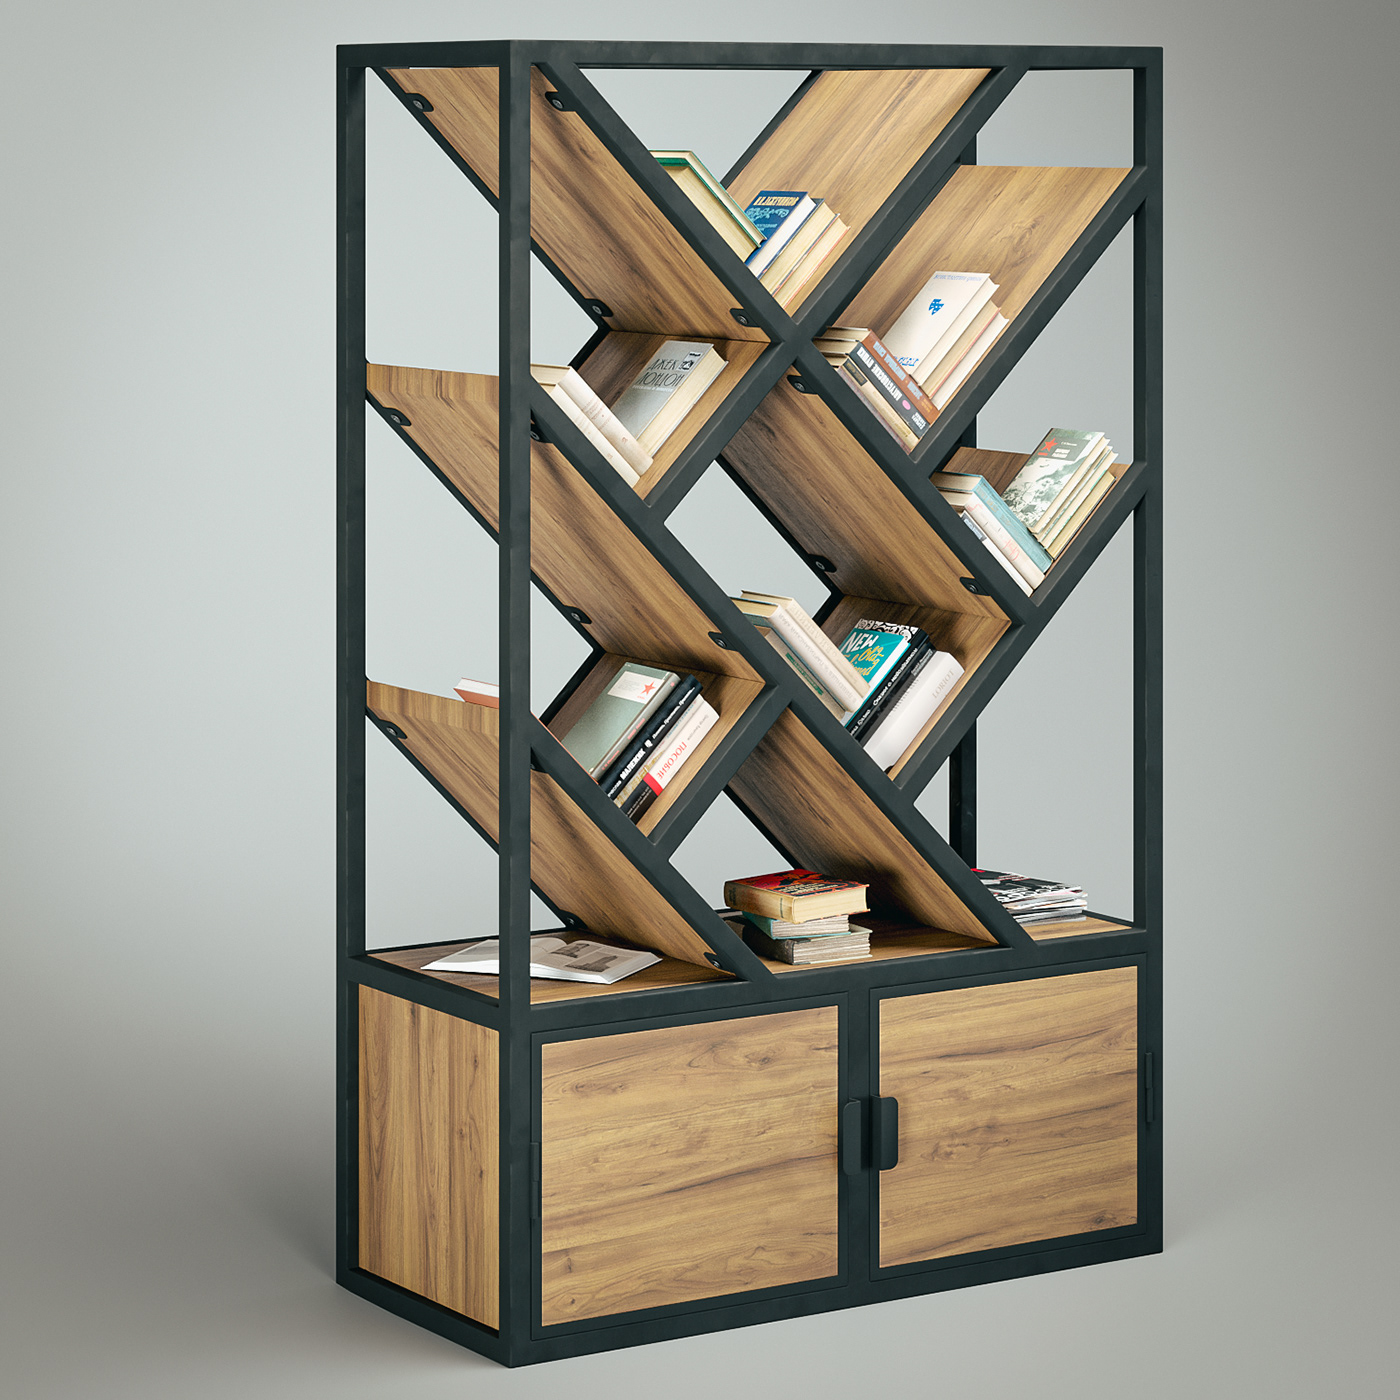 3ds max bookshelf corona furniture furniture design  indoor Interior interior design  LOFT DESIGN visualization